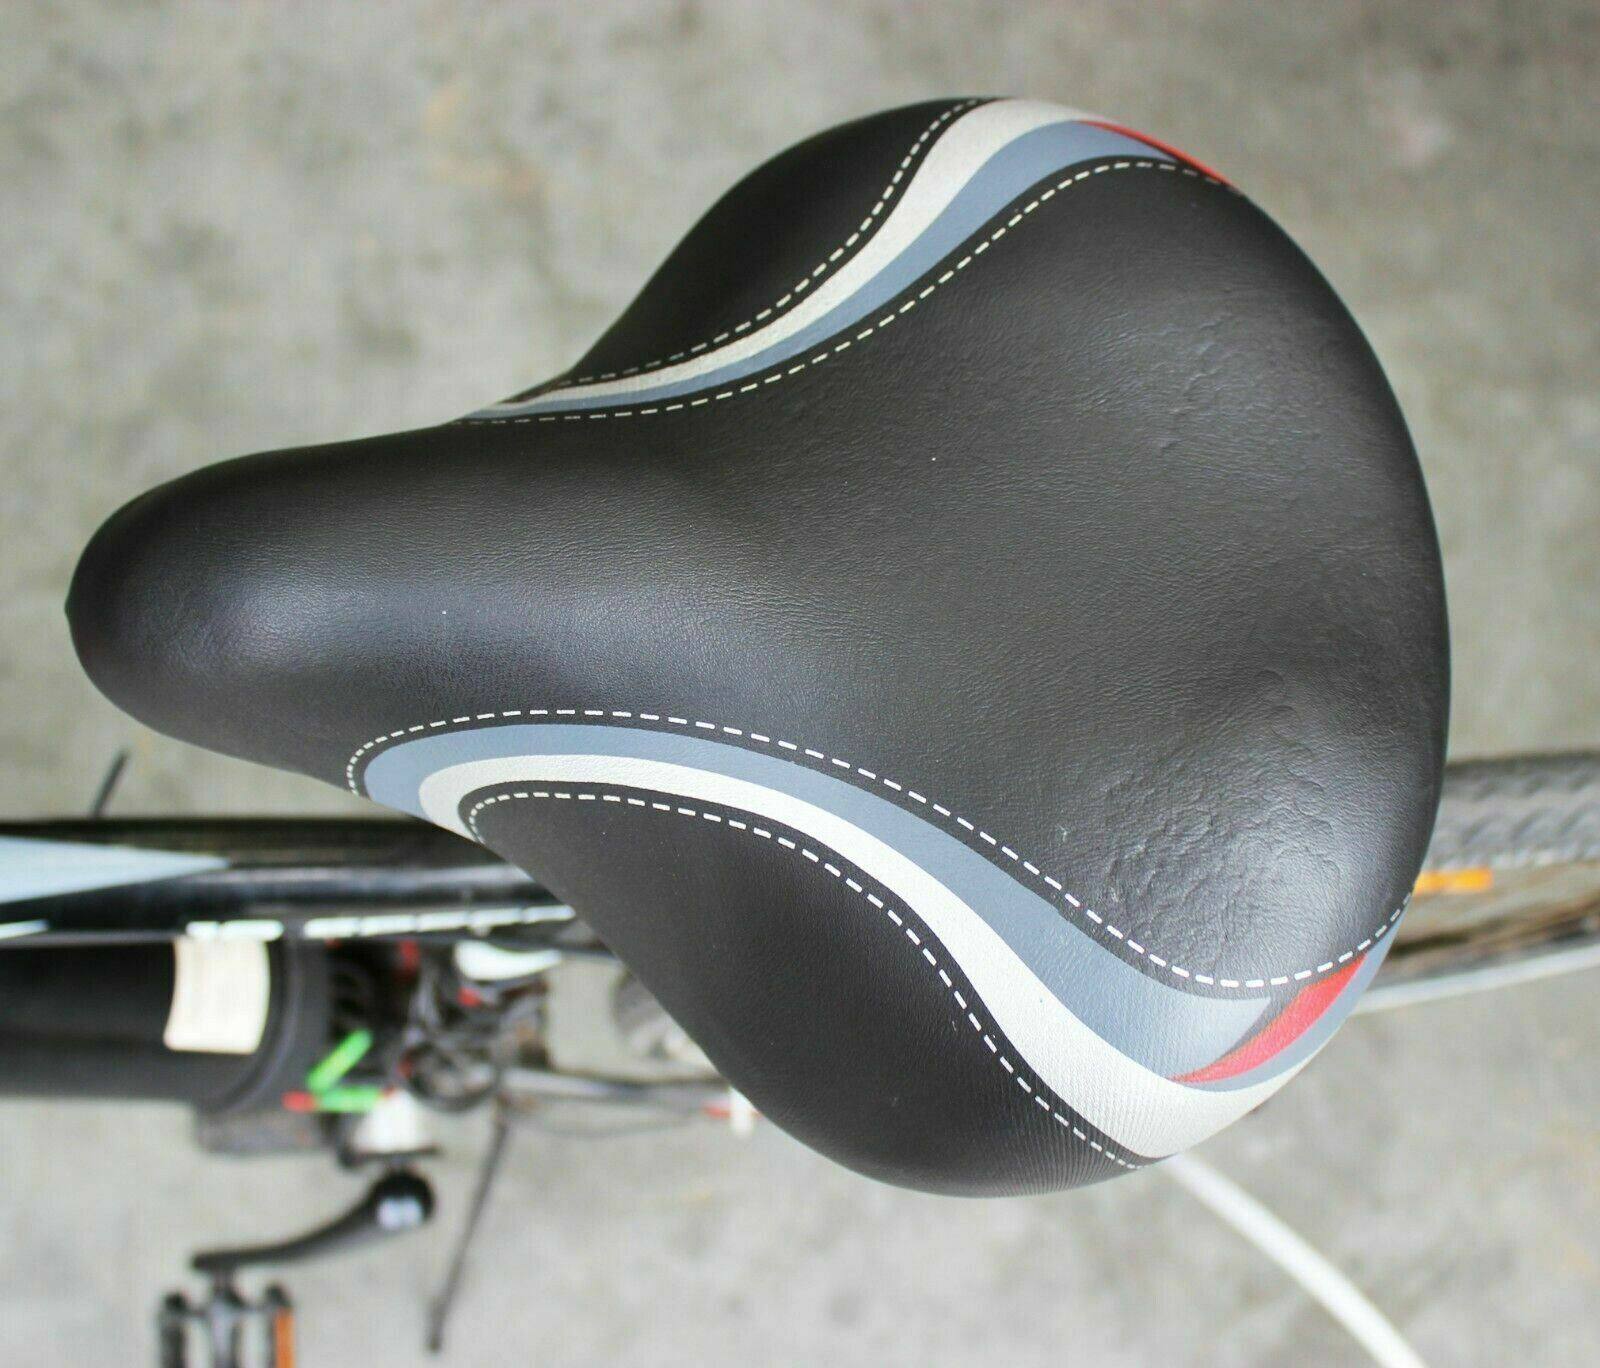 Unisex Large Bum Bike Bicycle Cycling Sprung Seat Saddle with Seat Post Pillar - TDRMOTO